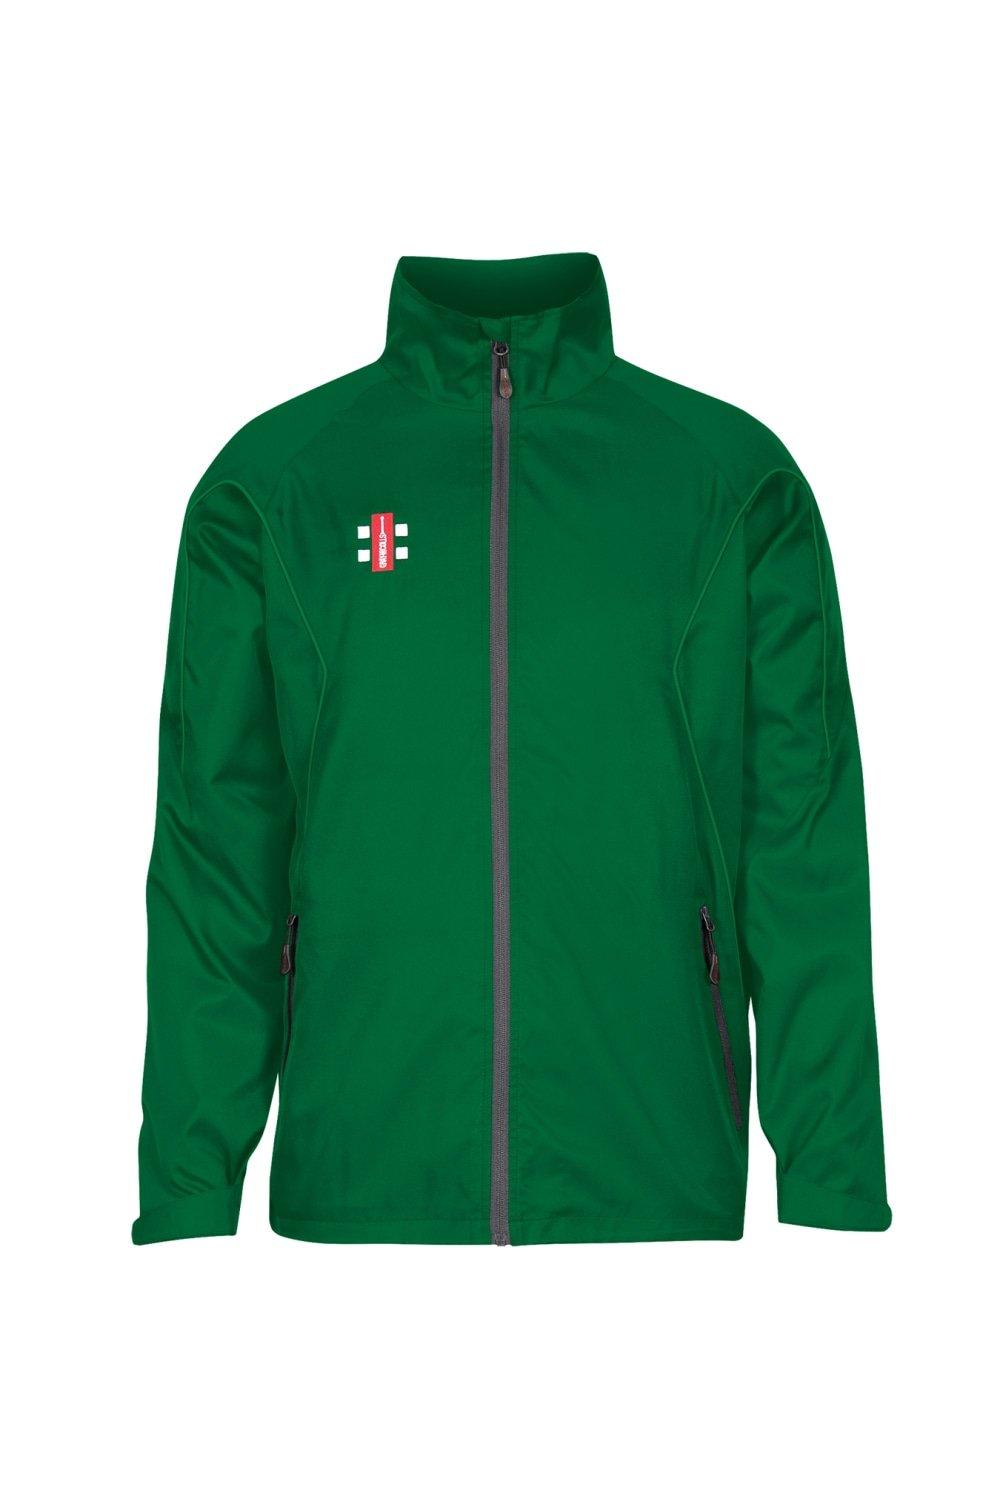 Тренировочная куртка Storm Gray-Nicolls, зеленый топ трикотажный 44 46 размер